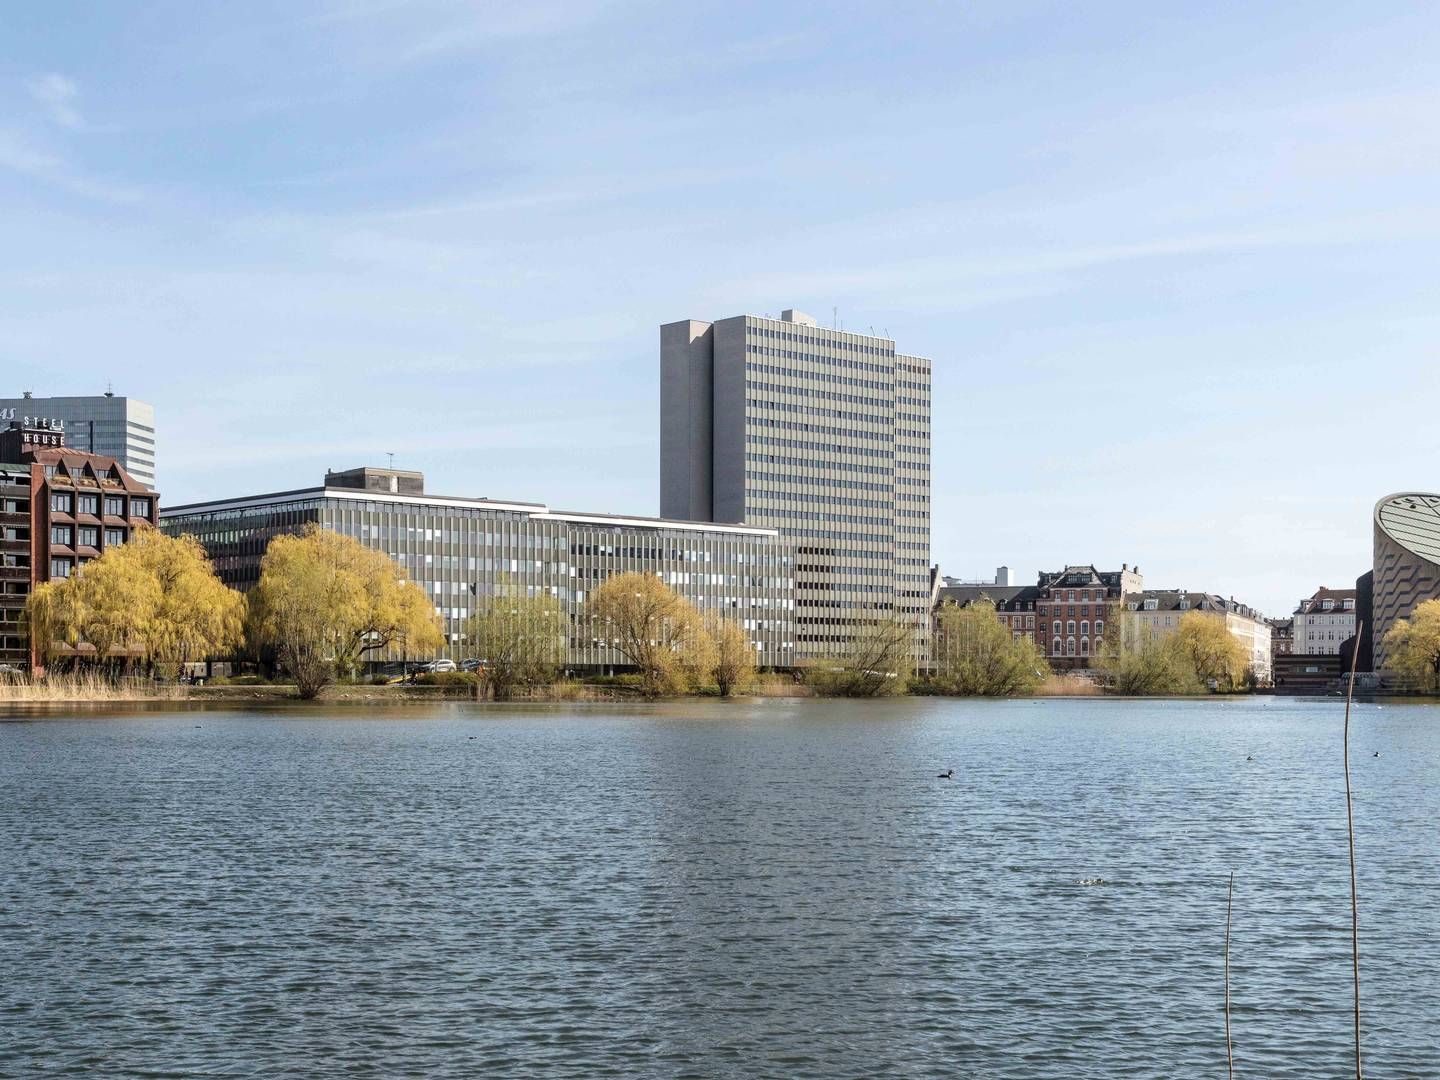 Ejendommen til venstre for Scandic Hotel bliver fra torsdag en del af ejendomsporteføljen hos Danske Banks pensionsselskab Danica. | Foto: PR / Danica / Niels Nygaard